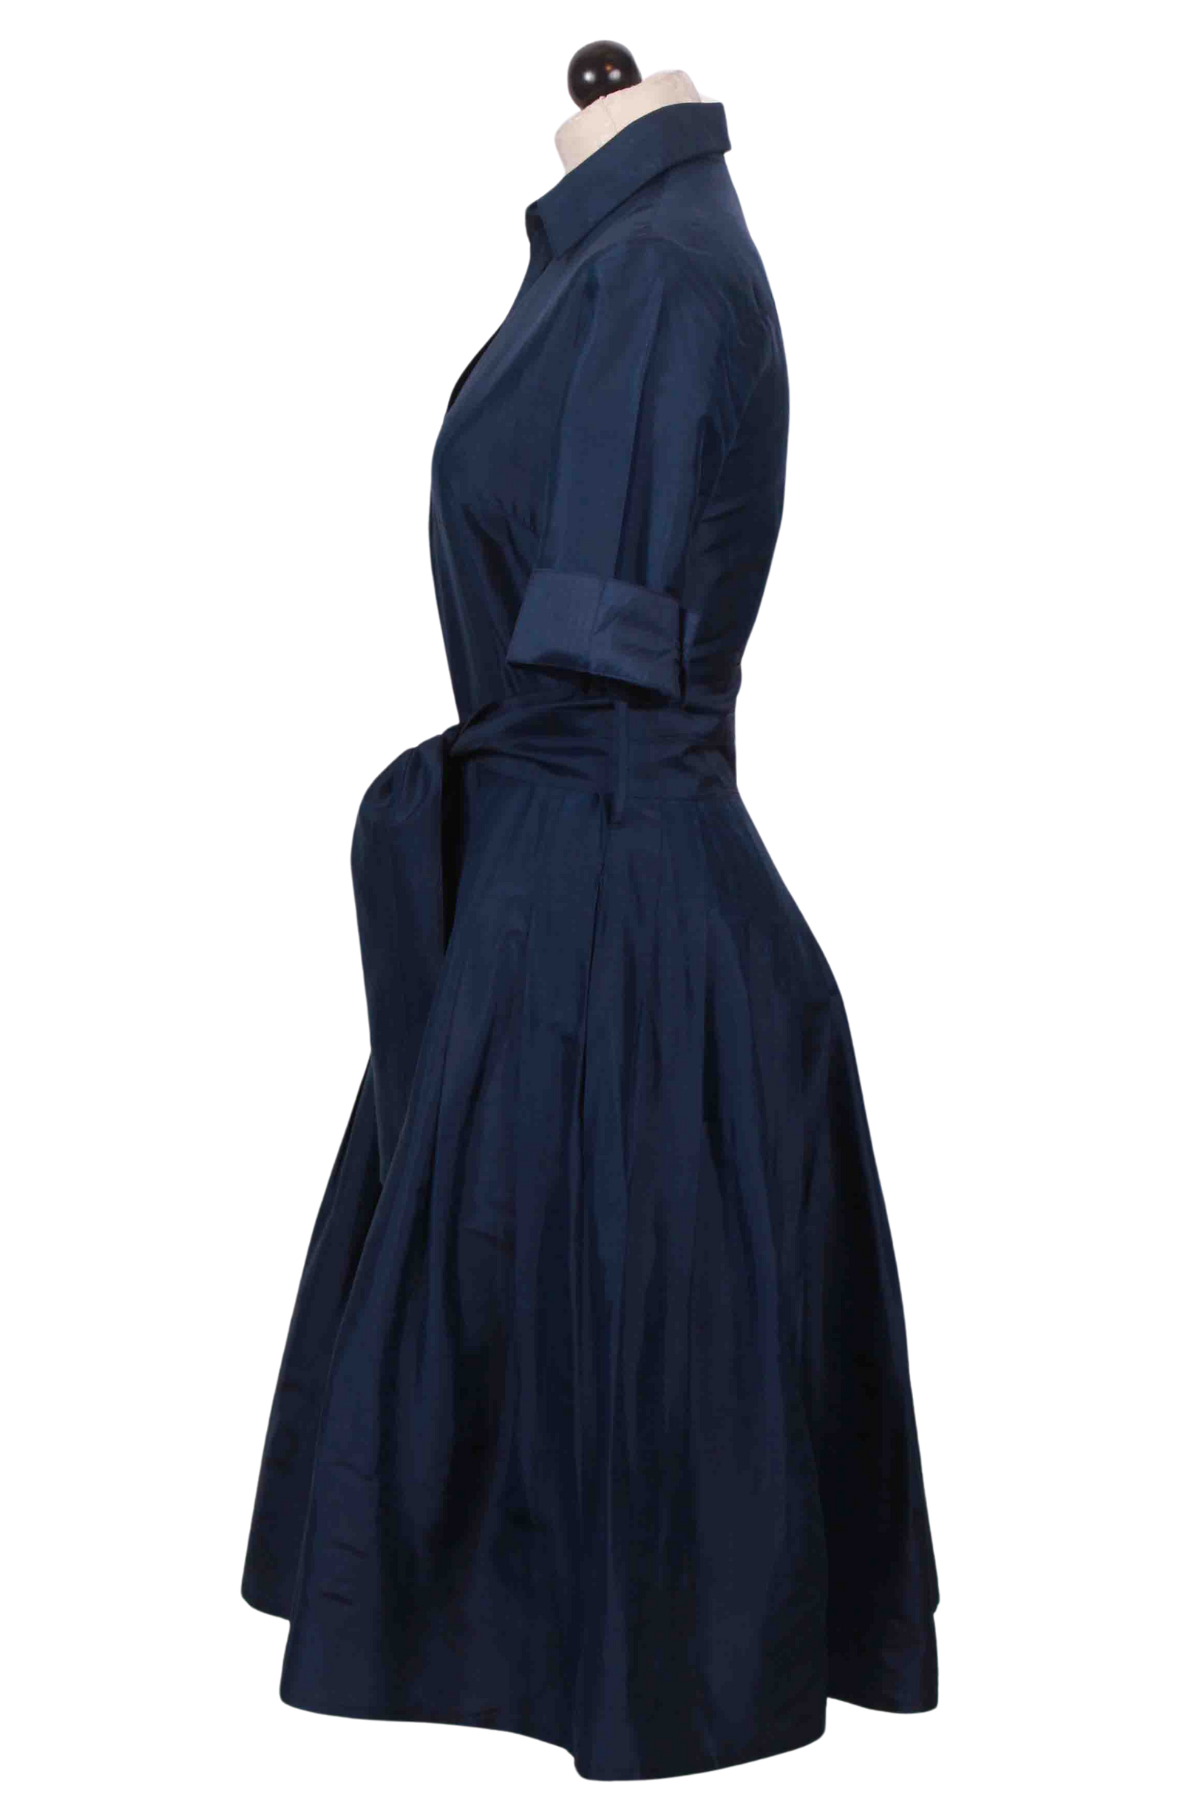 side view of Navy Dupioni Silk Mrs Maisel Dress by Dizzy Lizzie